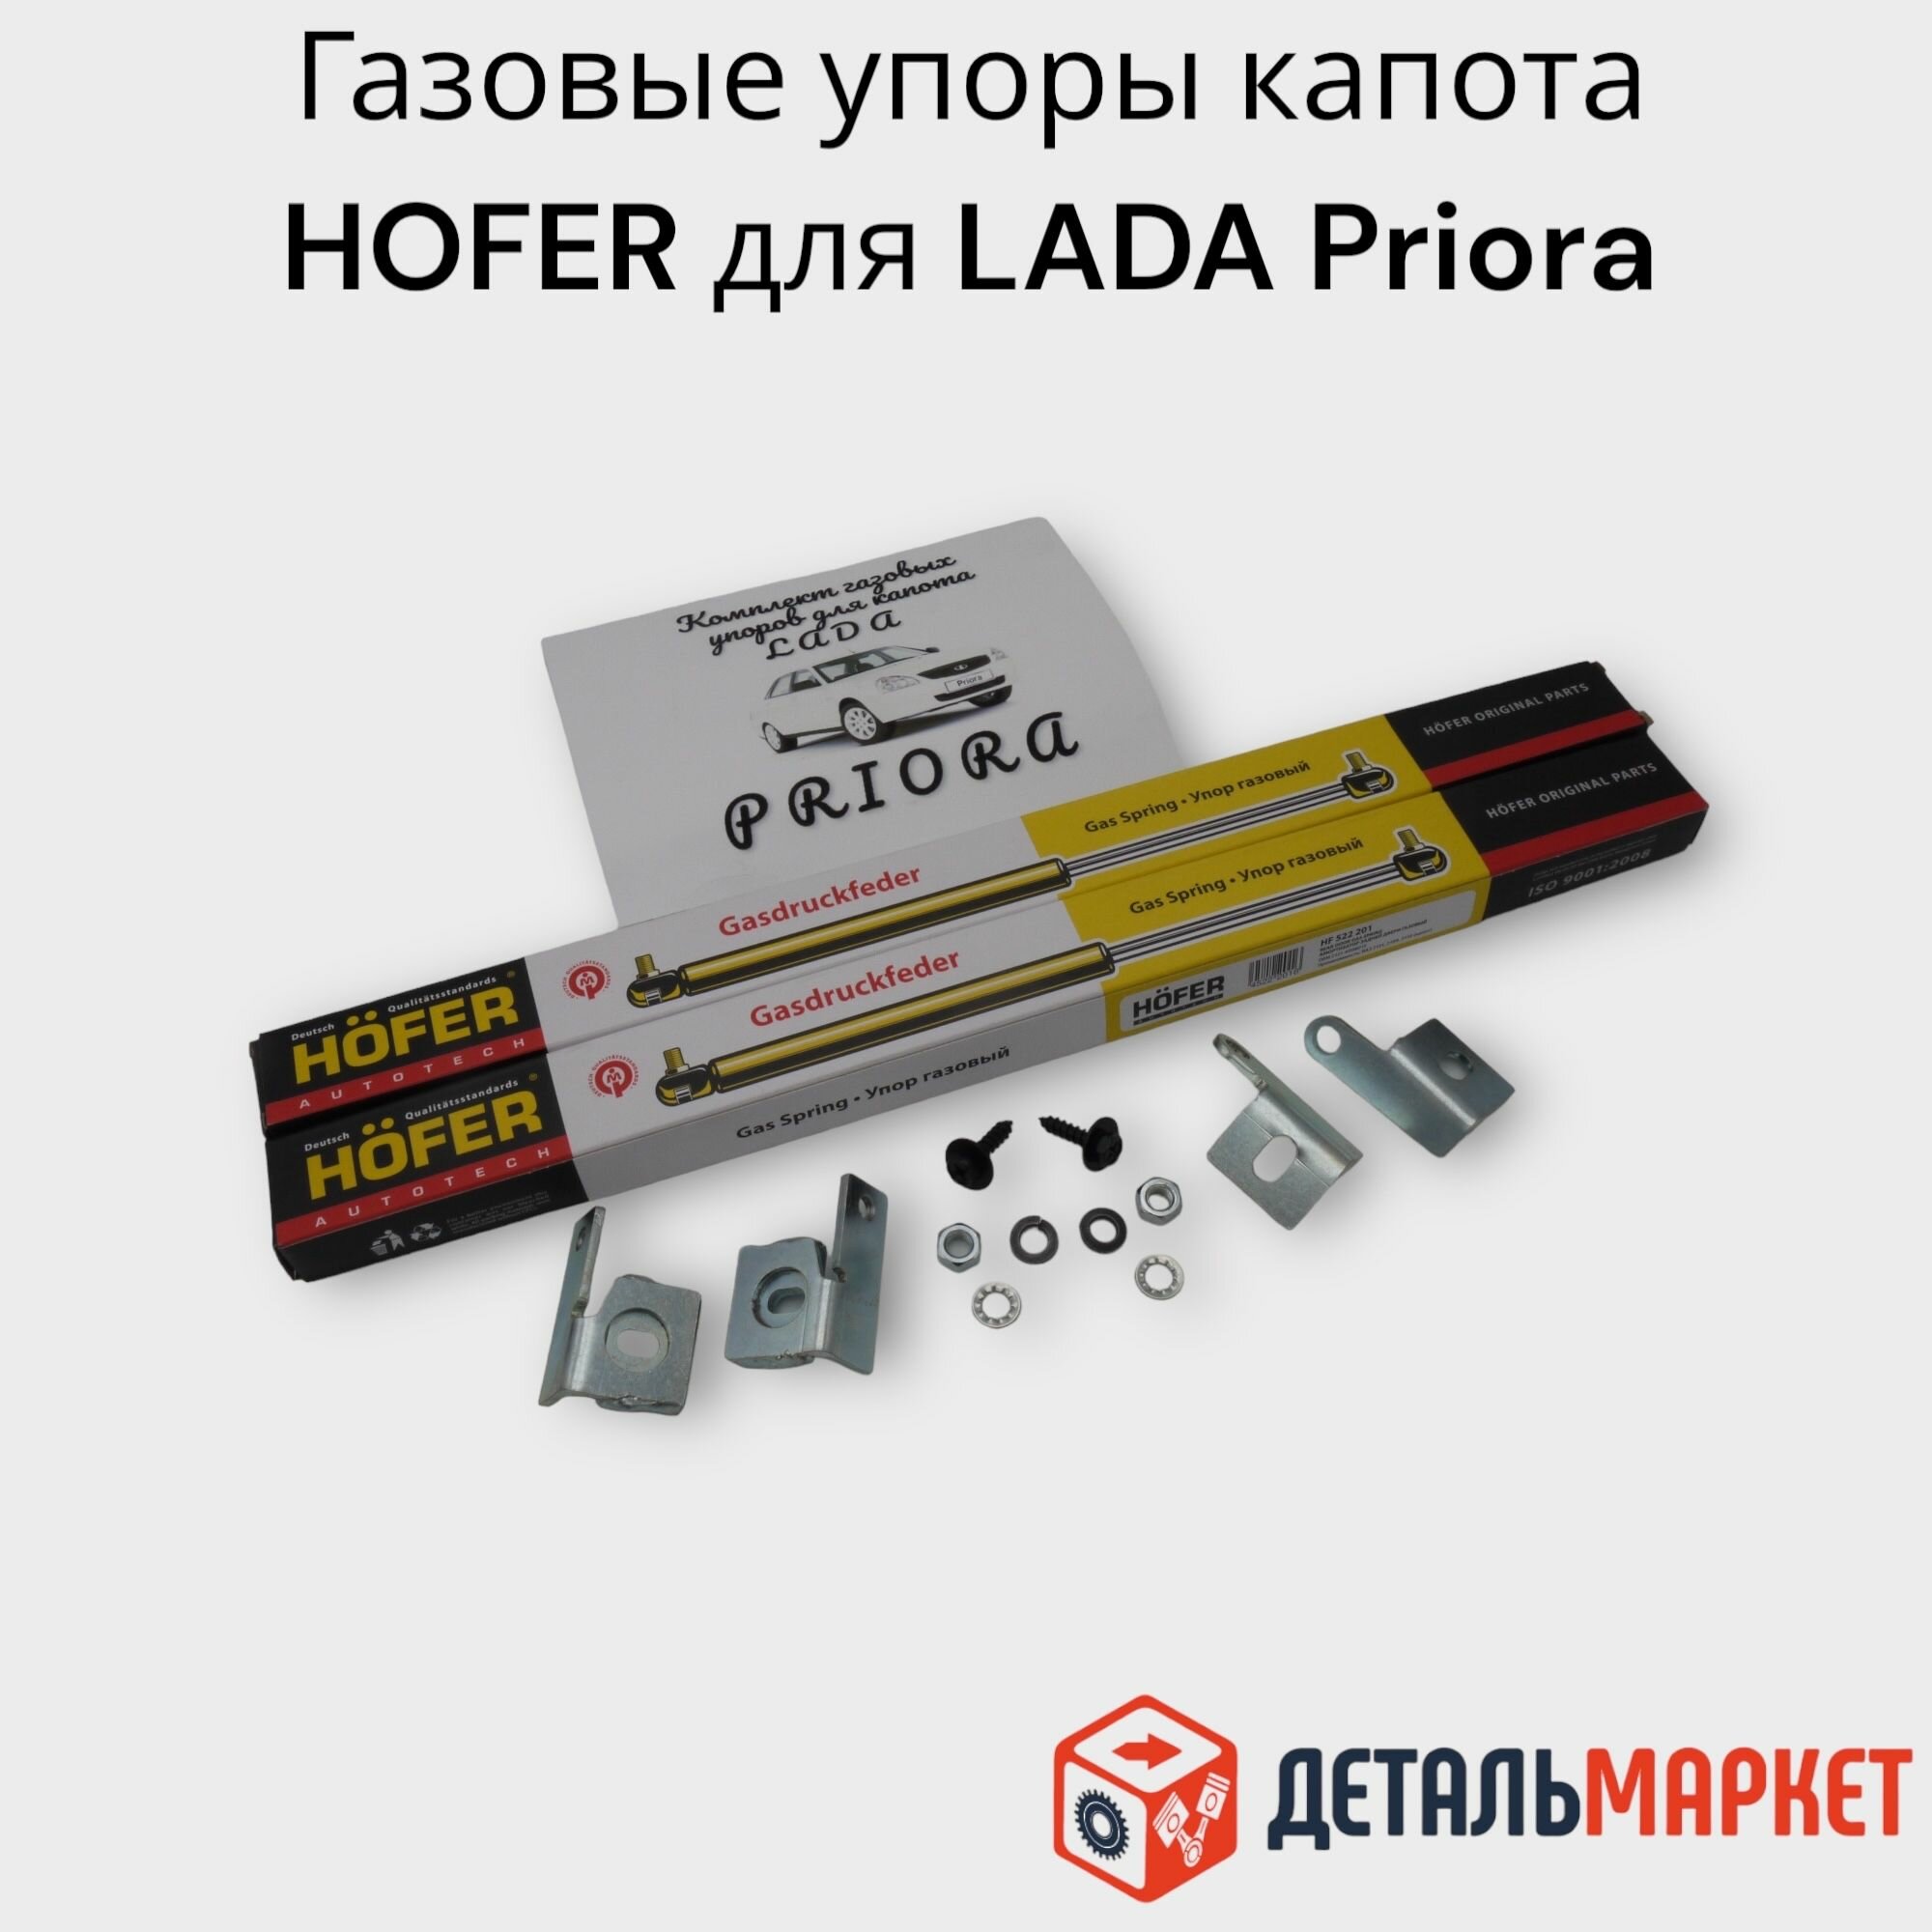 Газовые упоры капота HOFER для автомобиля LADA Priora / лада Приора